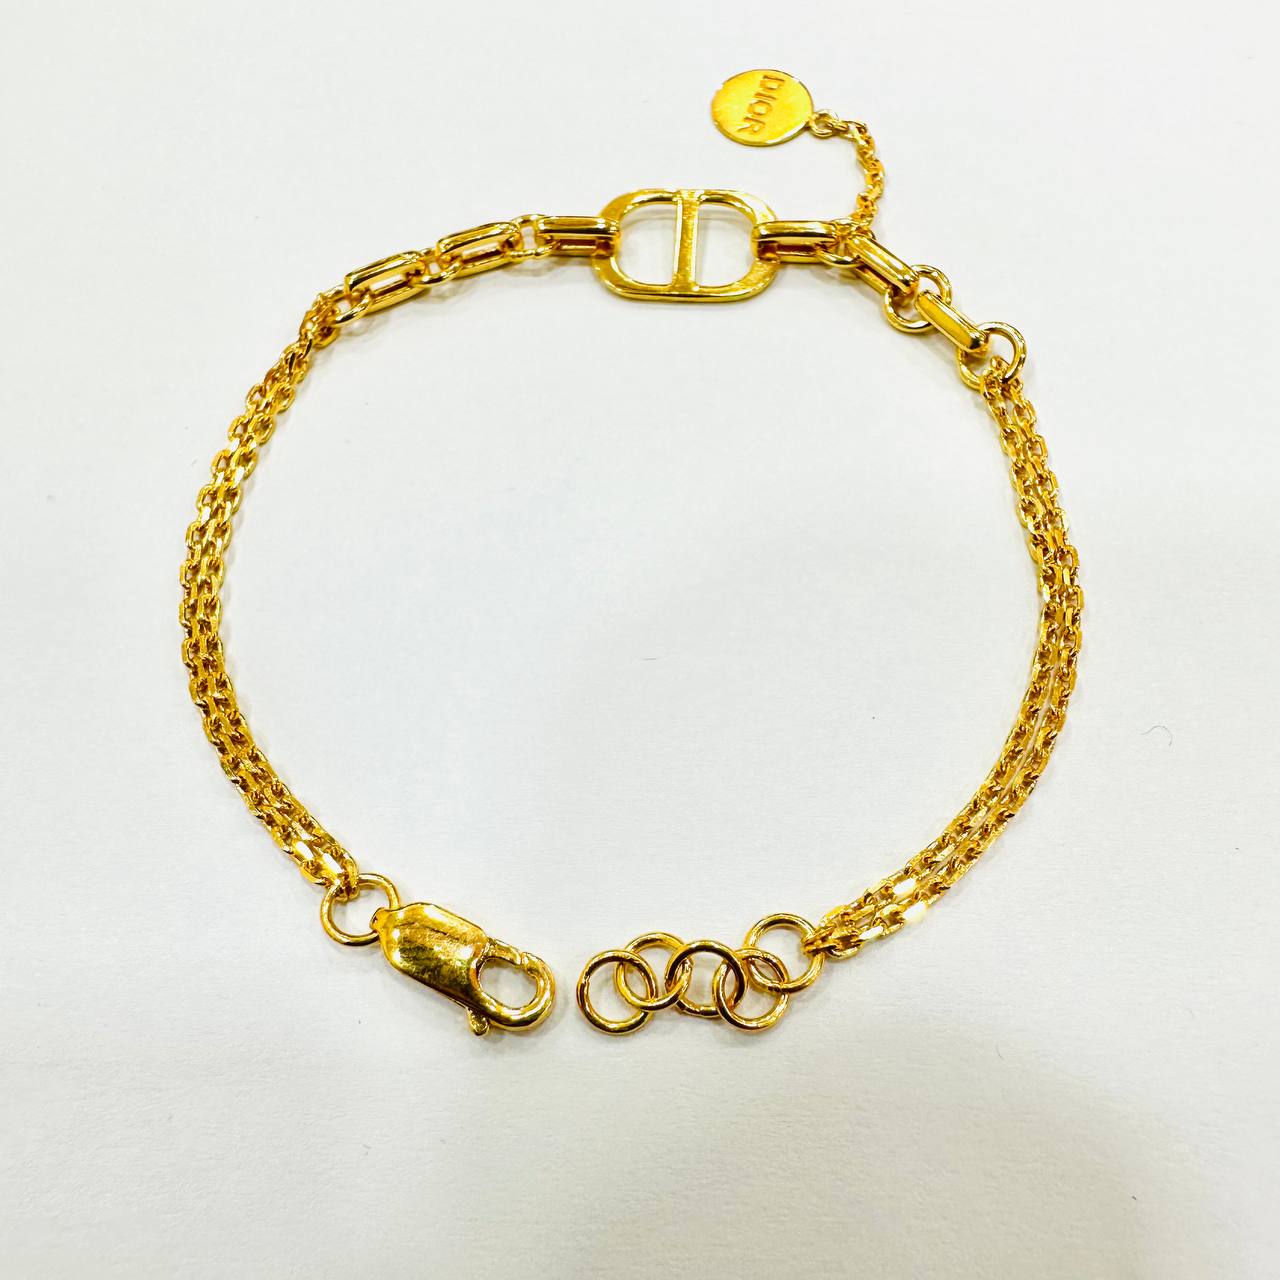 22k / 916 Gold D design bracelet V2-916 gold-Best Gold Shop